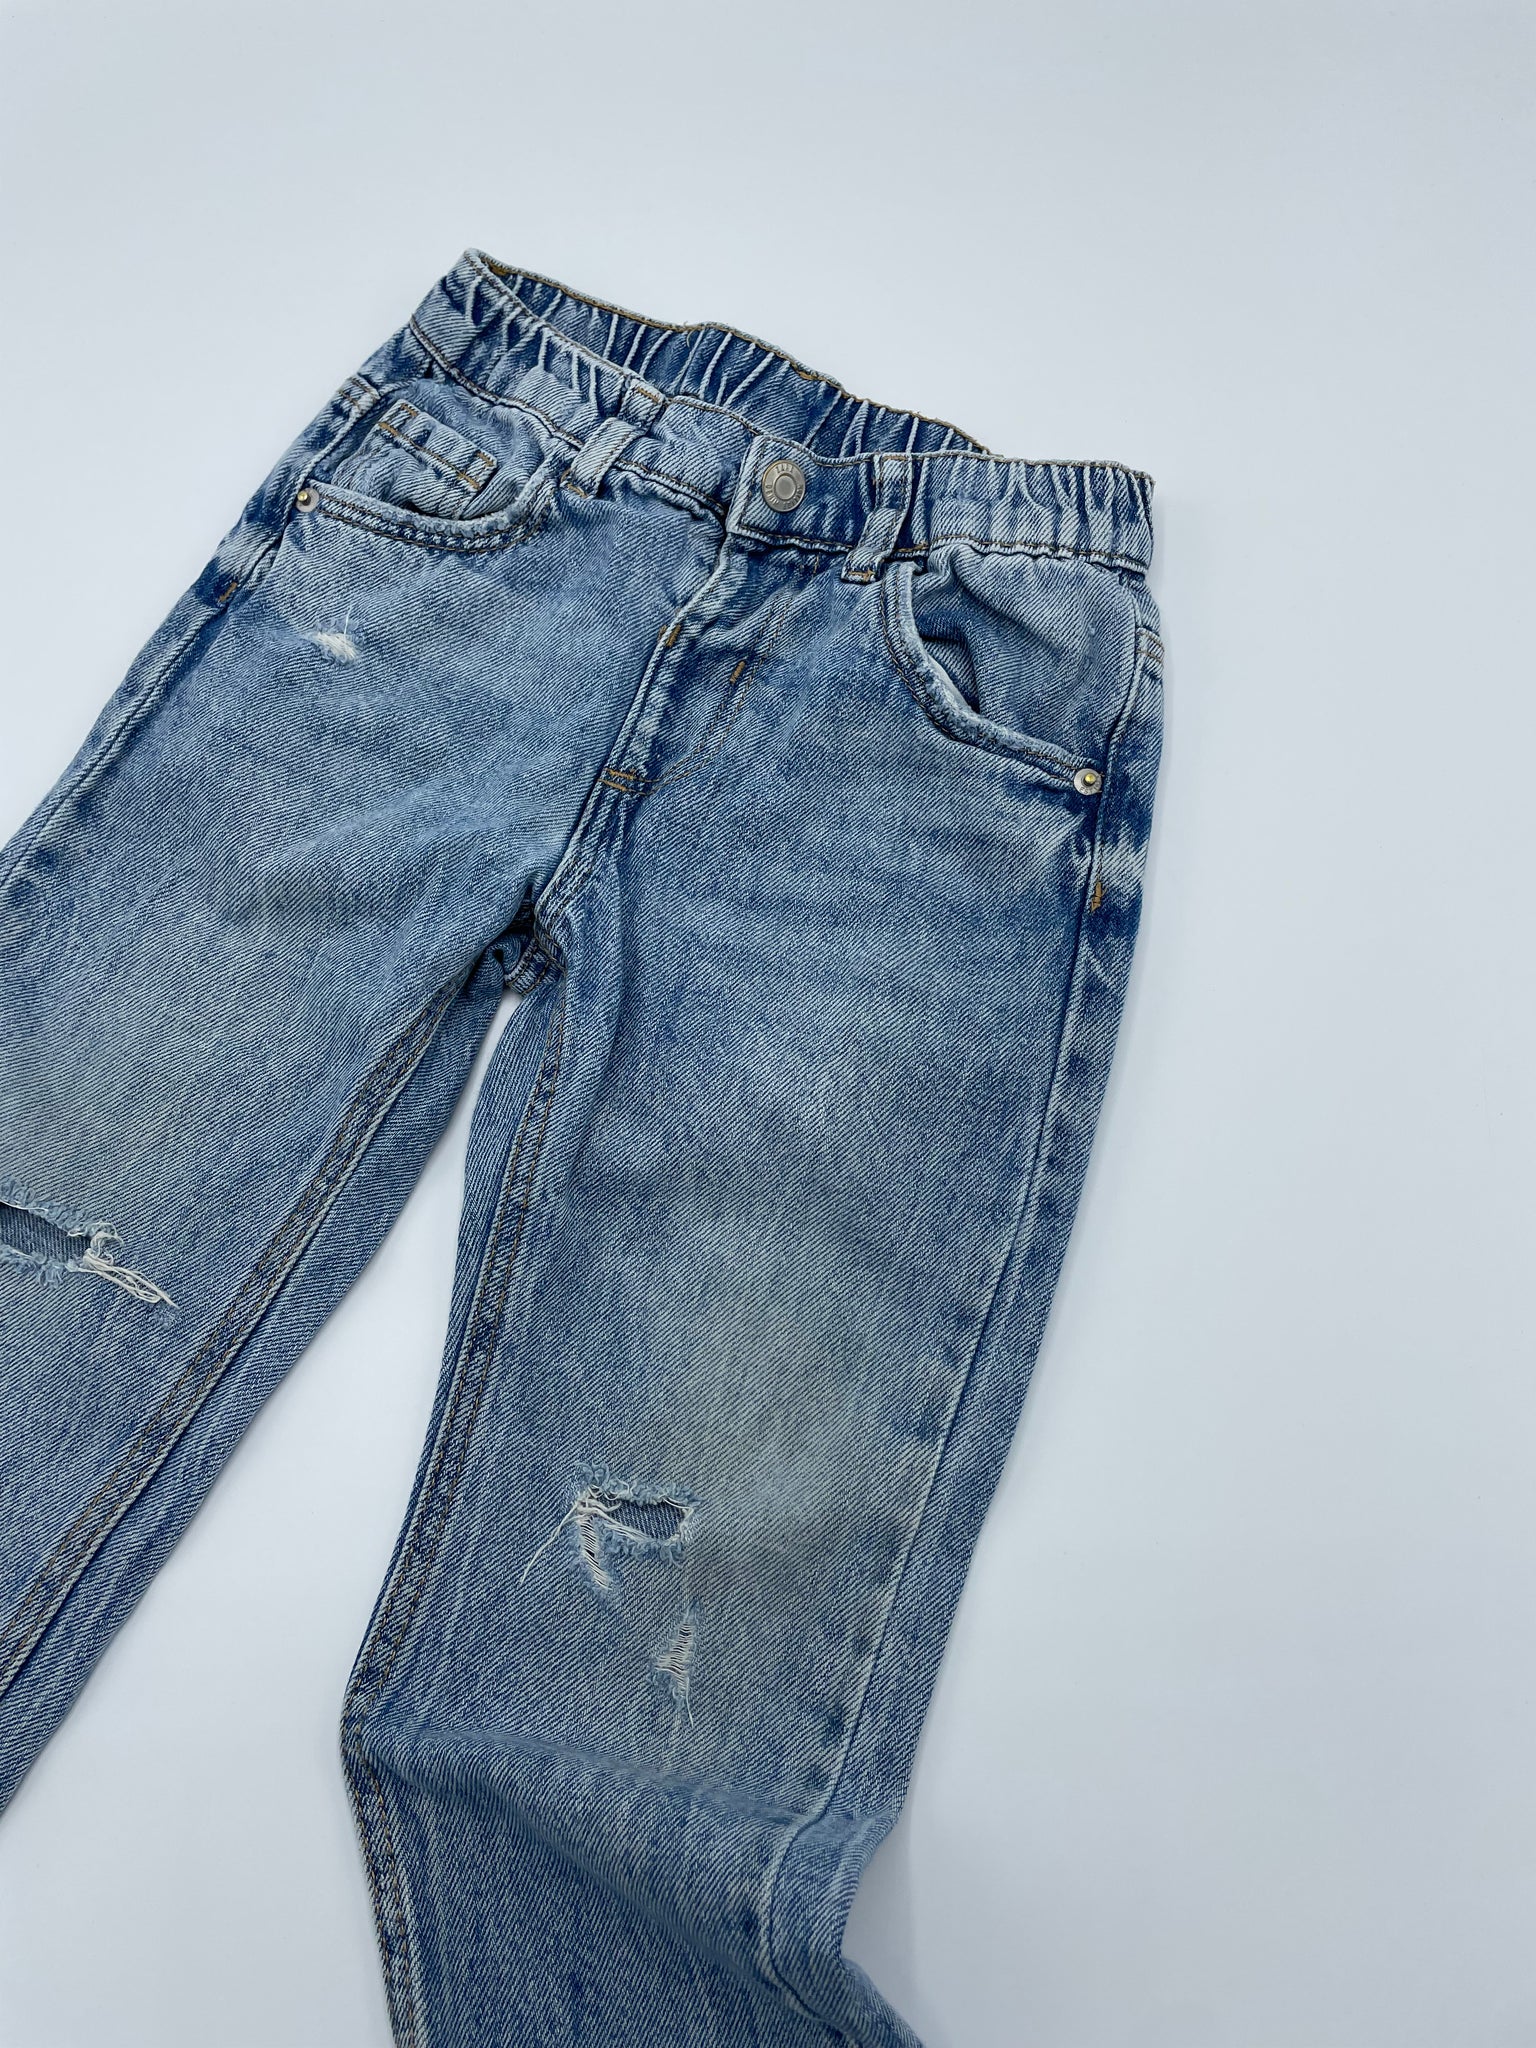 Pantalon Zara 3-4 ans 104cm (petits défauts)